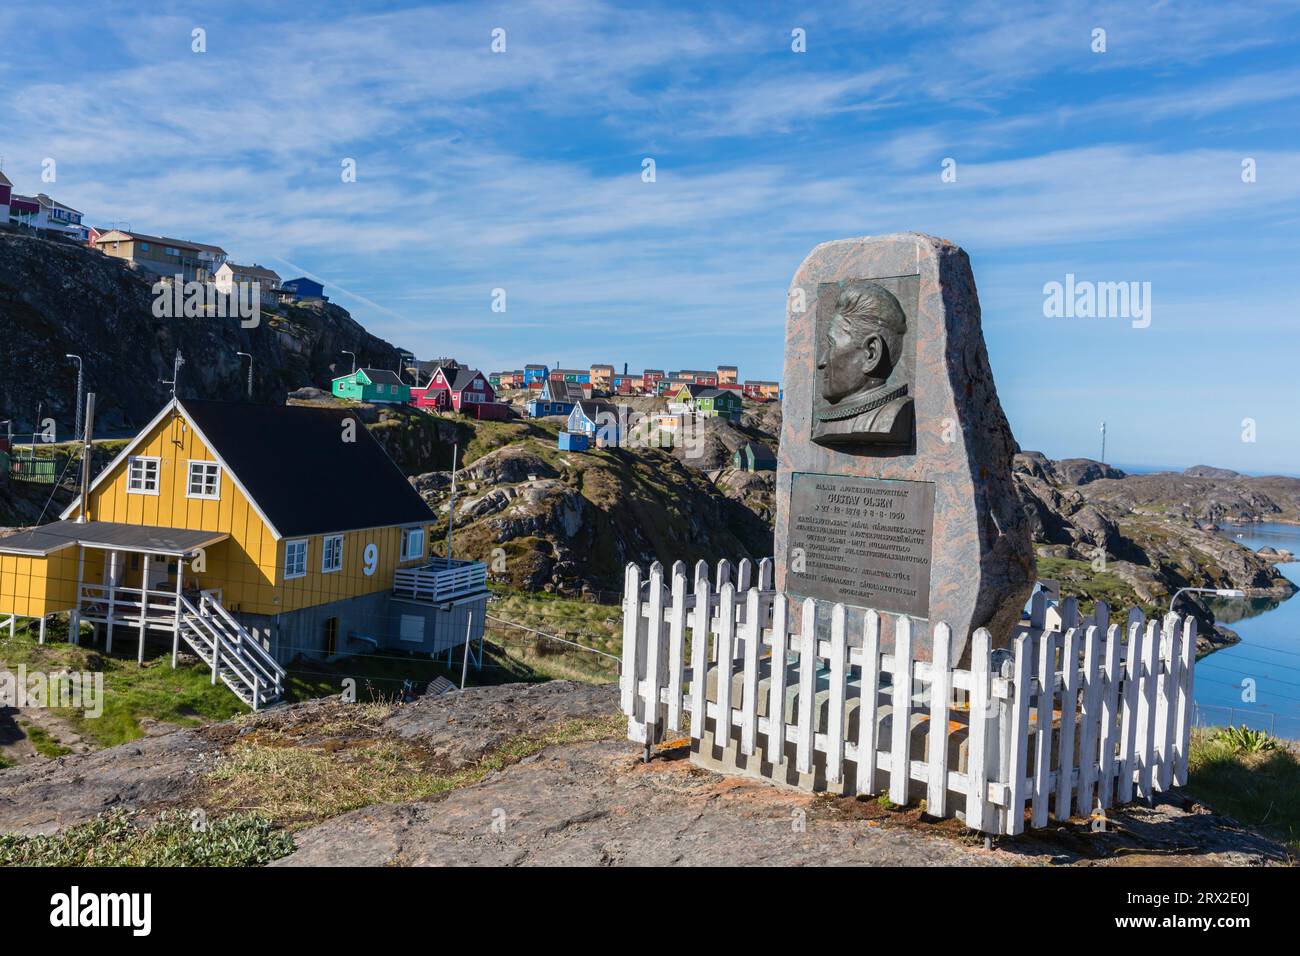 La ville danoise colorée de Sisimiut, Groenland occidental, régions polaires Banque D'Images